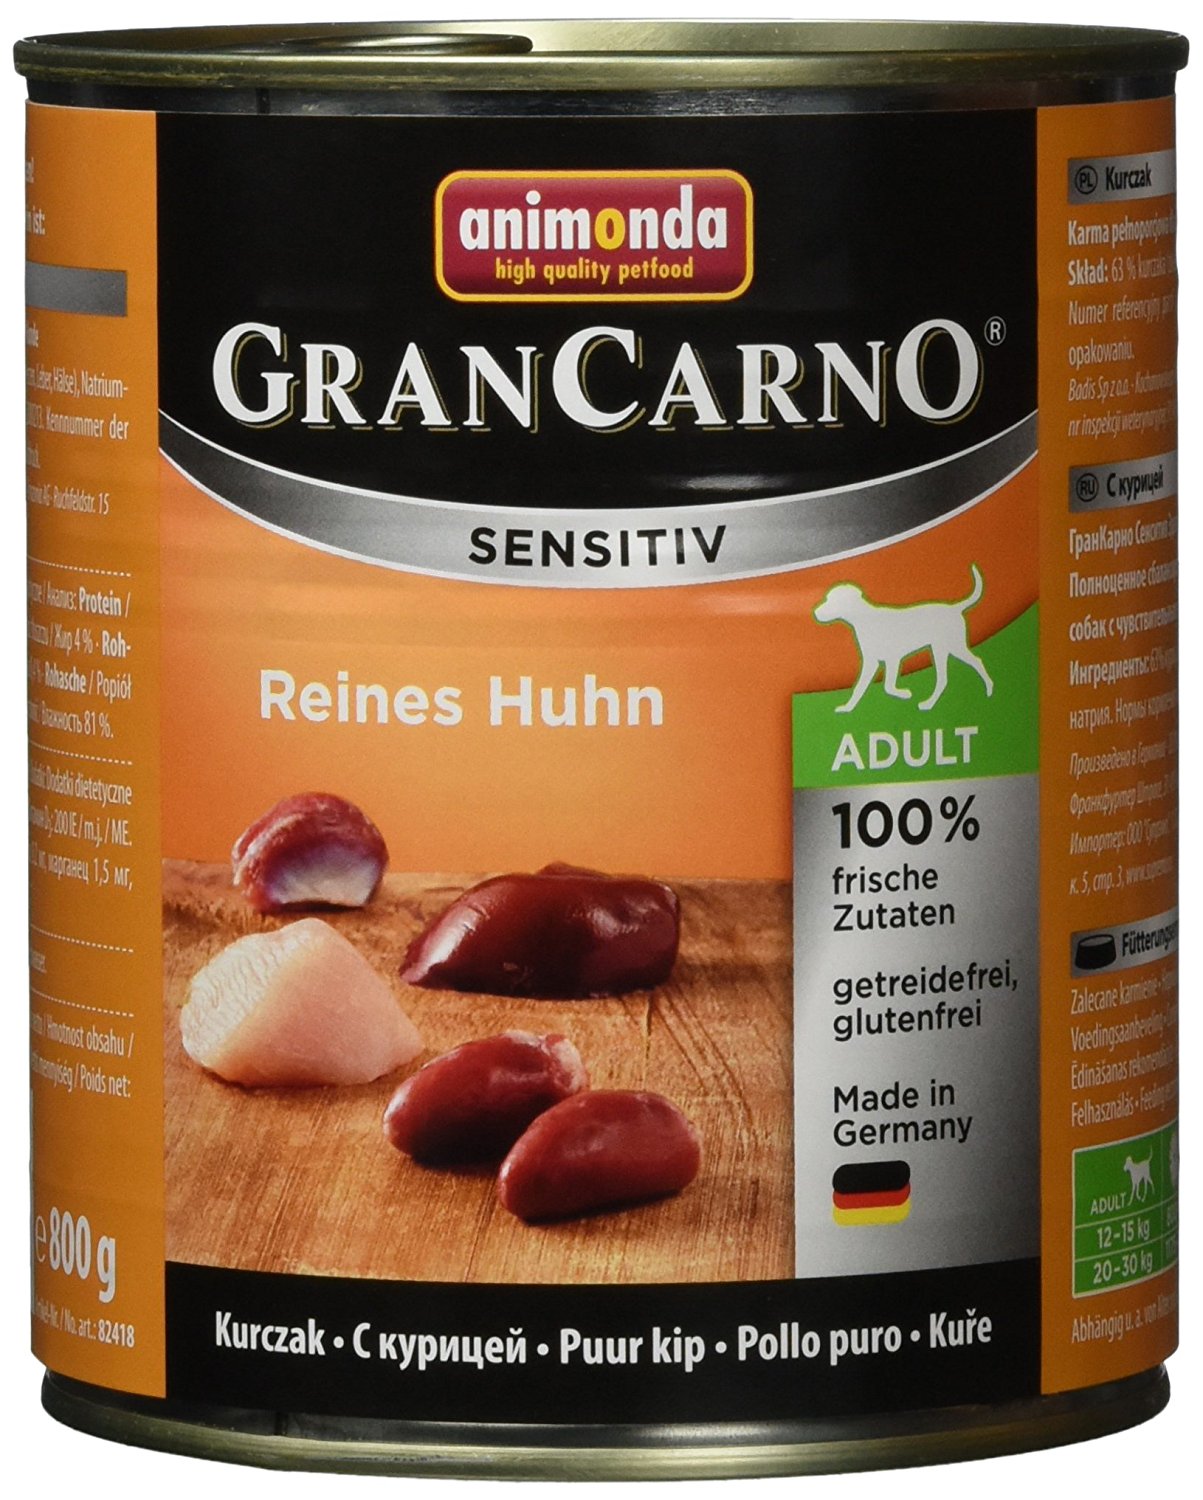 Animonda Gran Carno Hundefutter Sensitive Adult Reines Huhn, 6er Pack